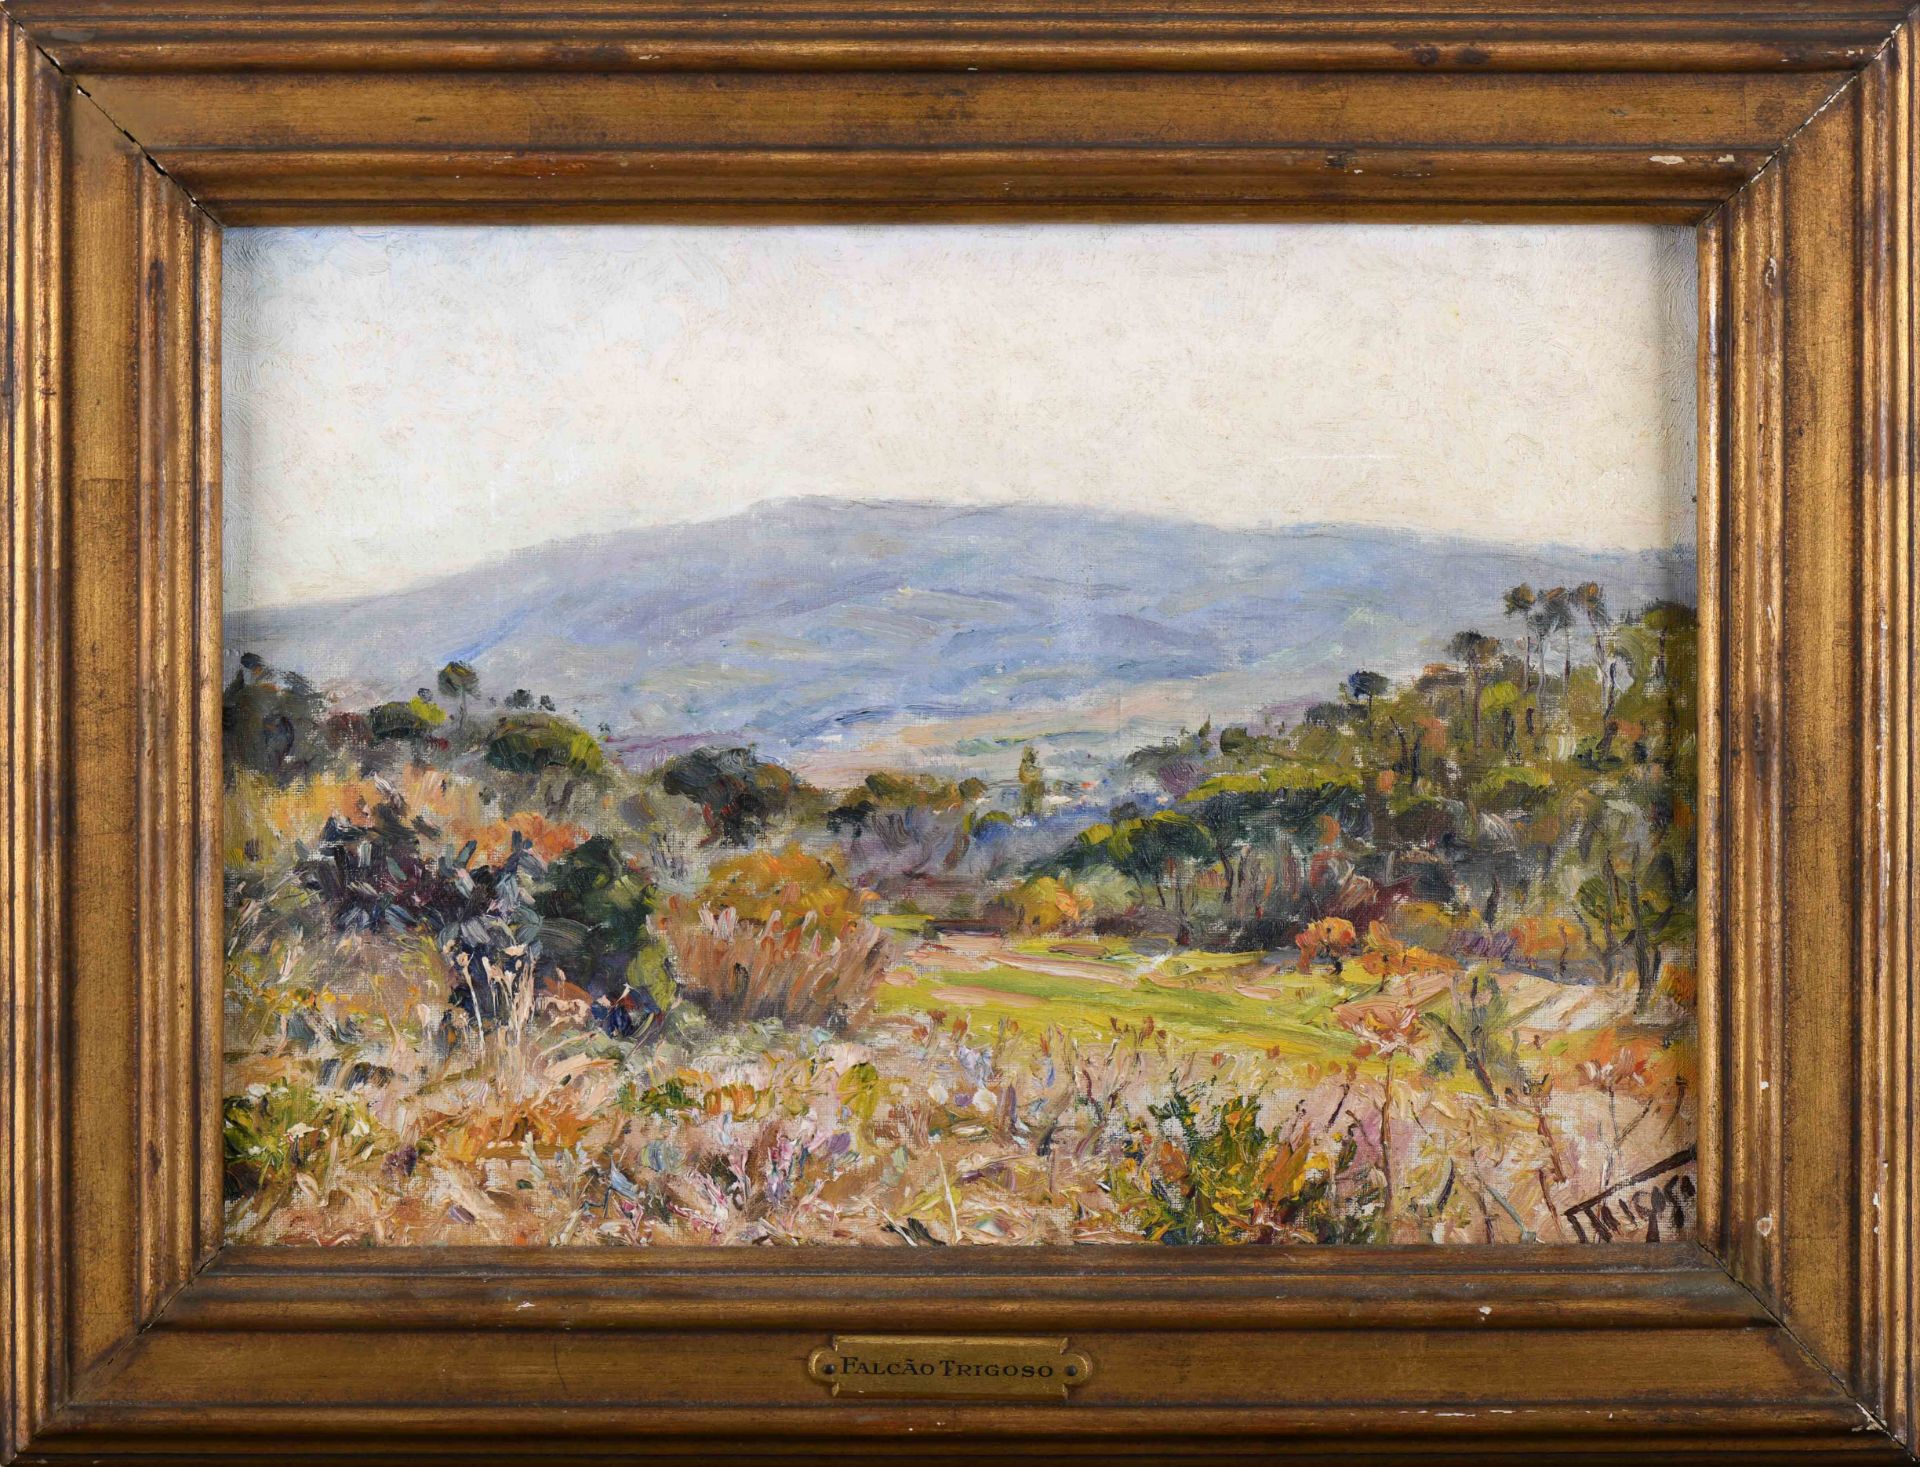 FALCÃO TRIGOSO - 1879-1956 A landscape